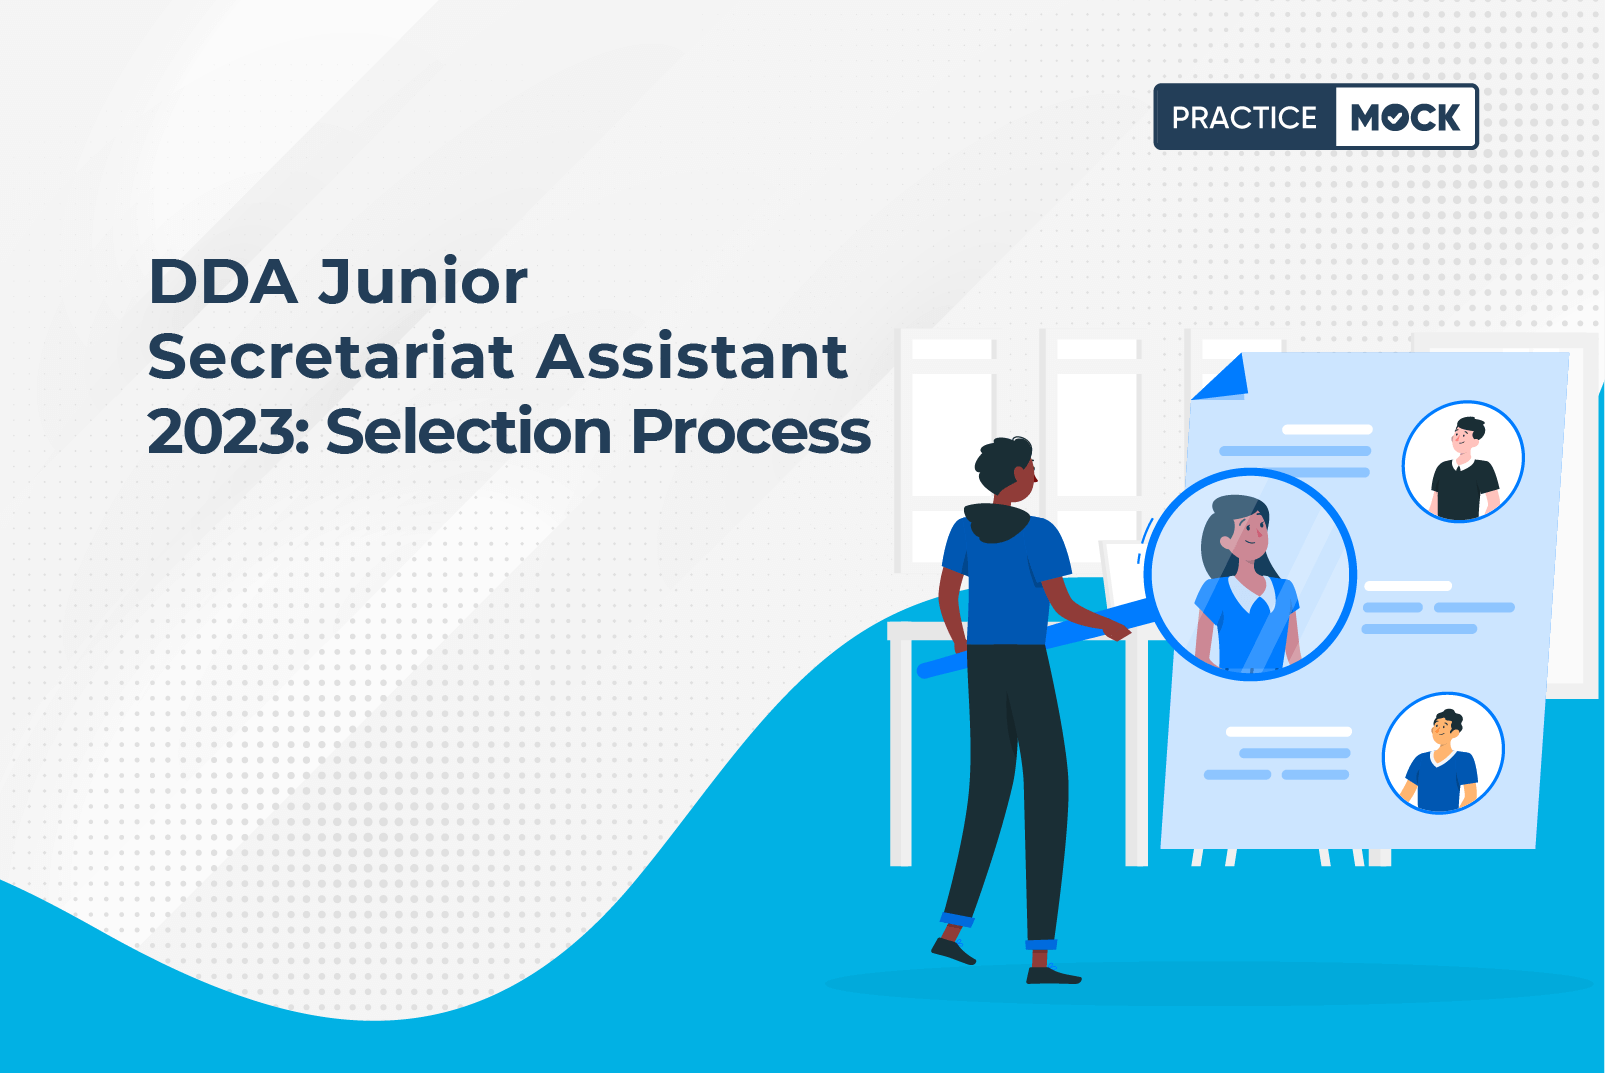 DDA Junior Secretariat Assistant 2023 Selection Process